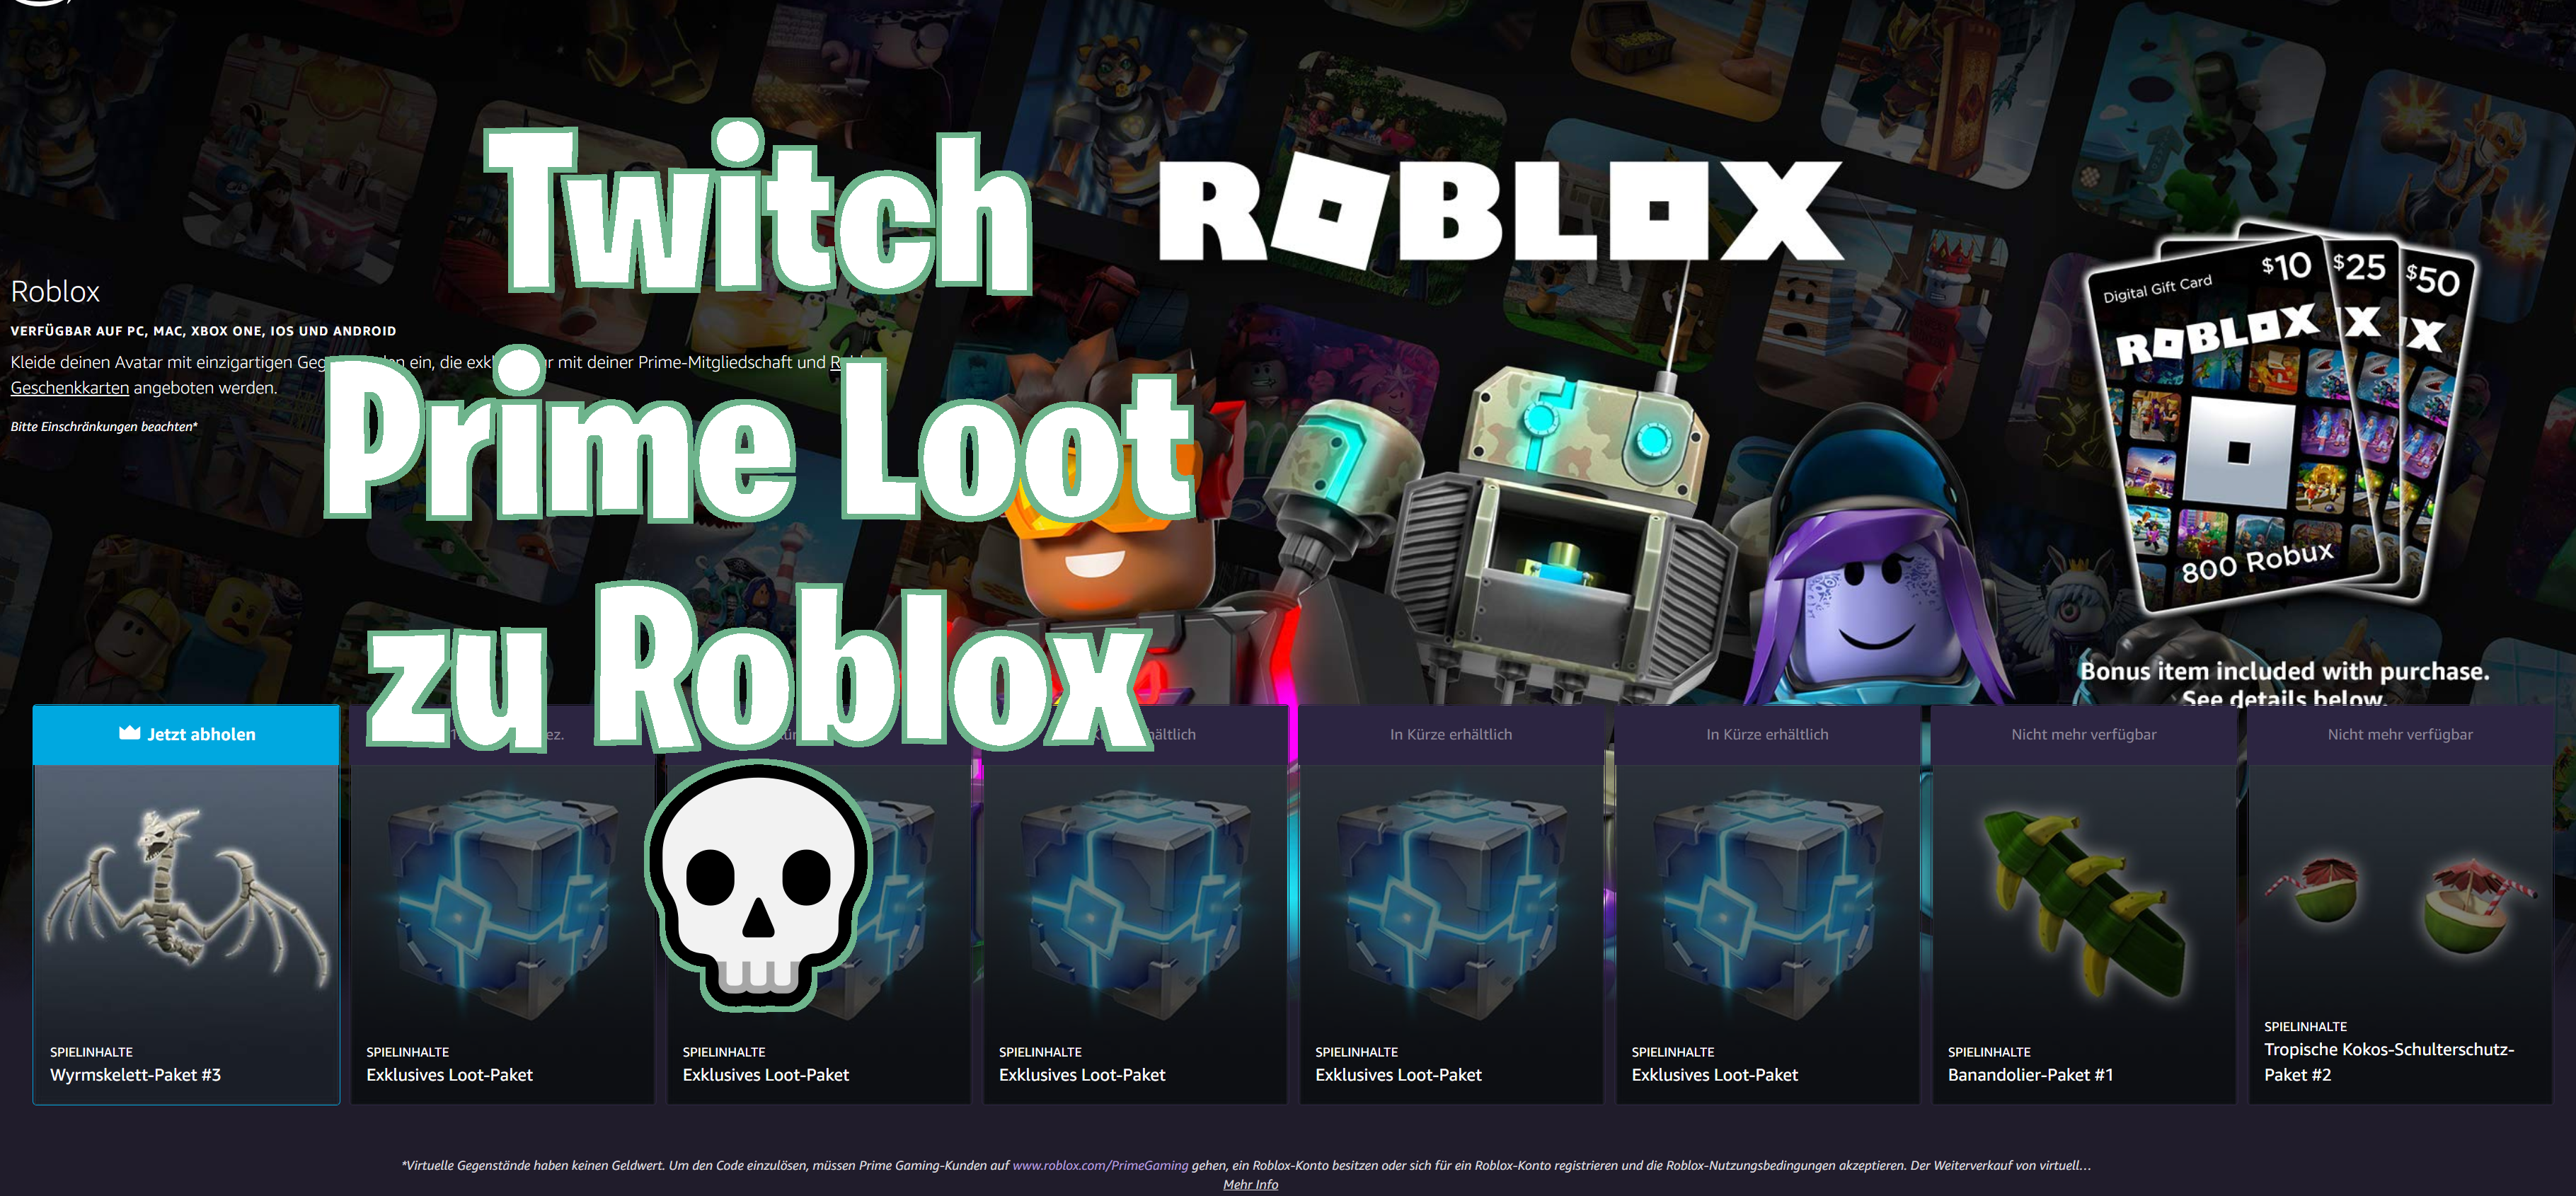 ▷? Twitch Prime Loot für Roblox enthält das Wyrmskelett-Paket #3